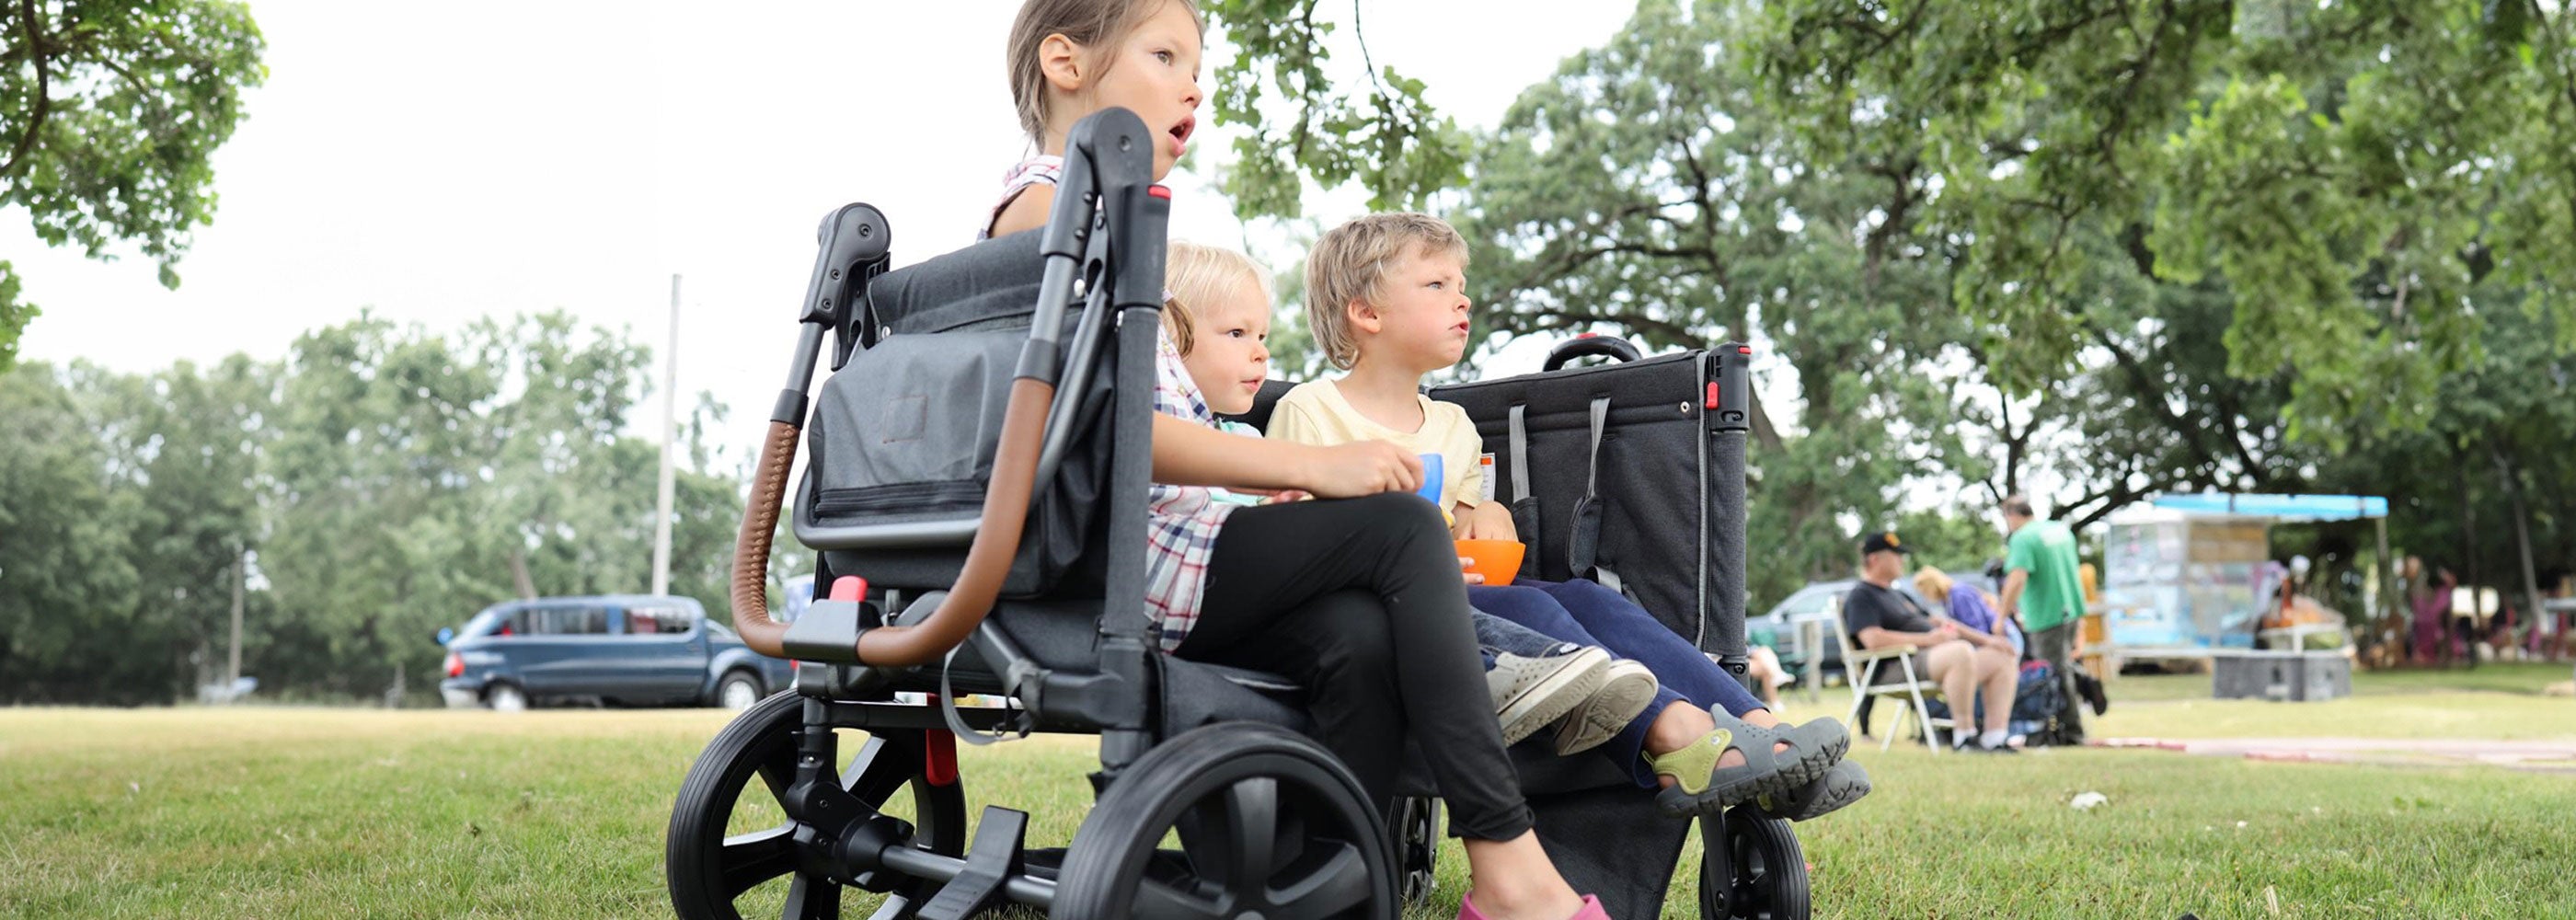 stroller wagon for family